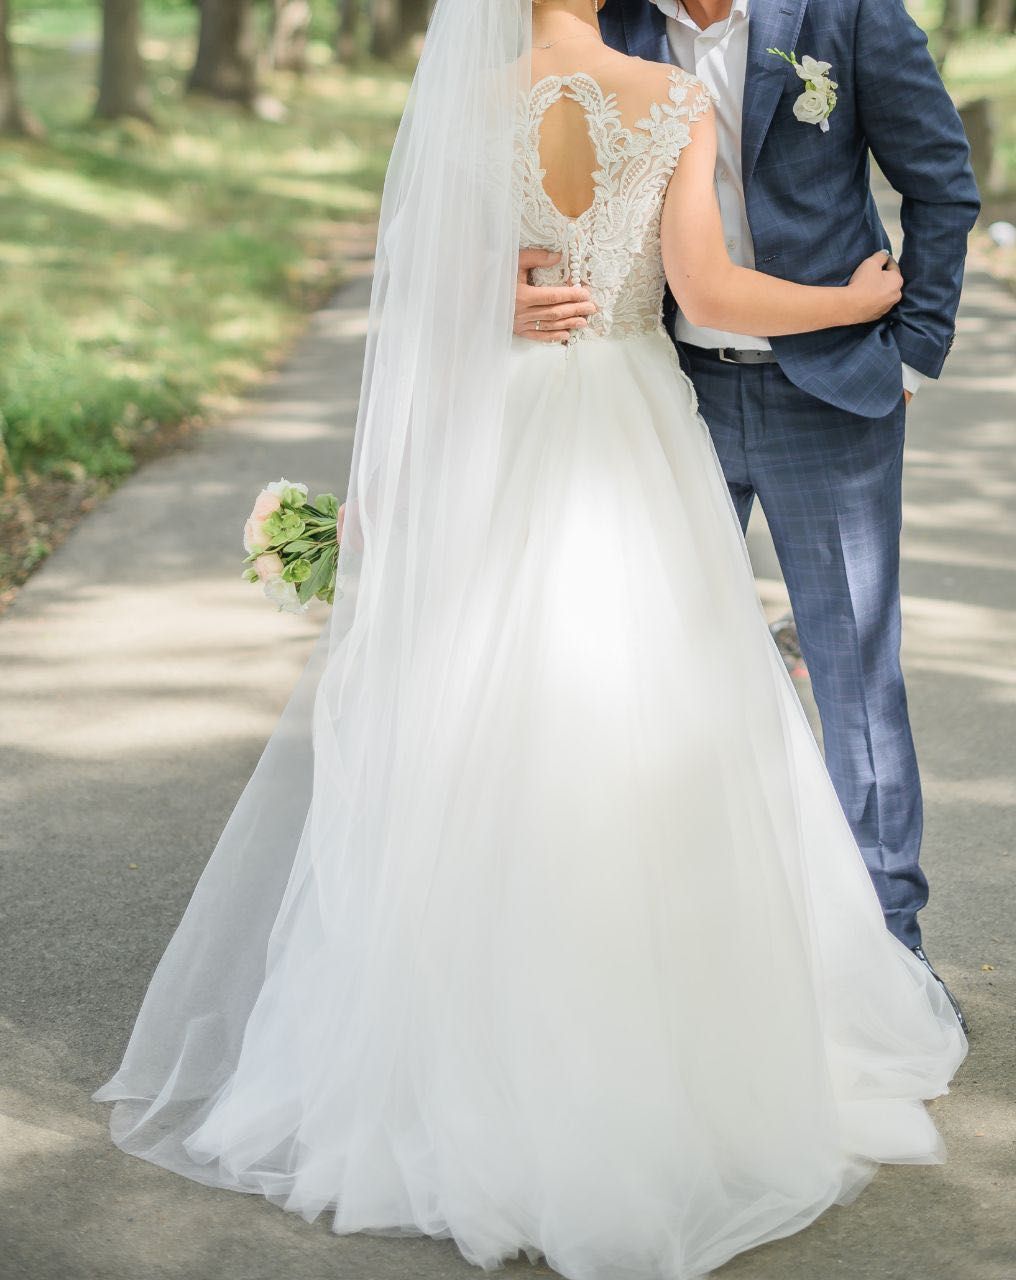 Ніжна весільна сукня 6000 грн/індивідуальний пошив